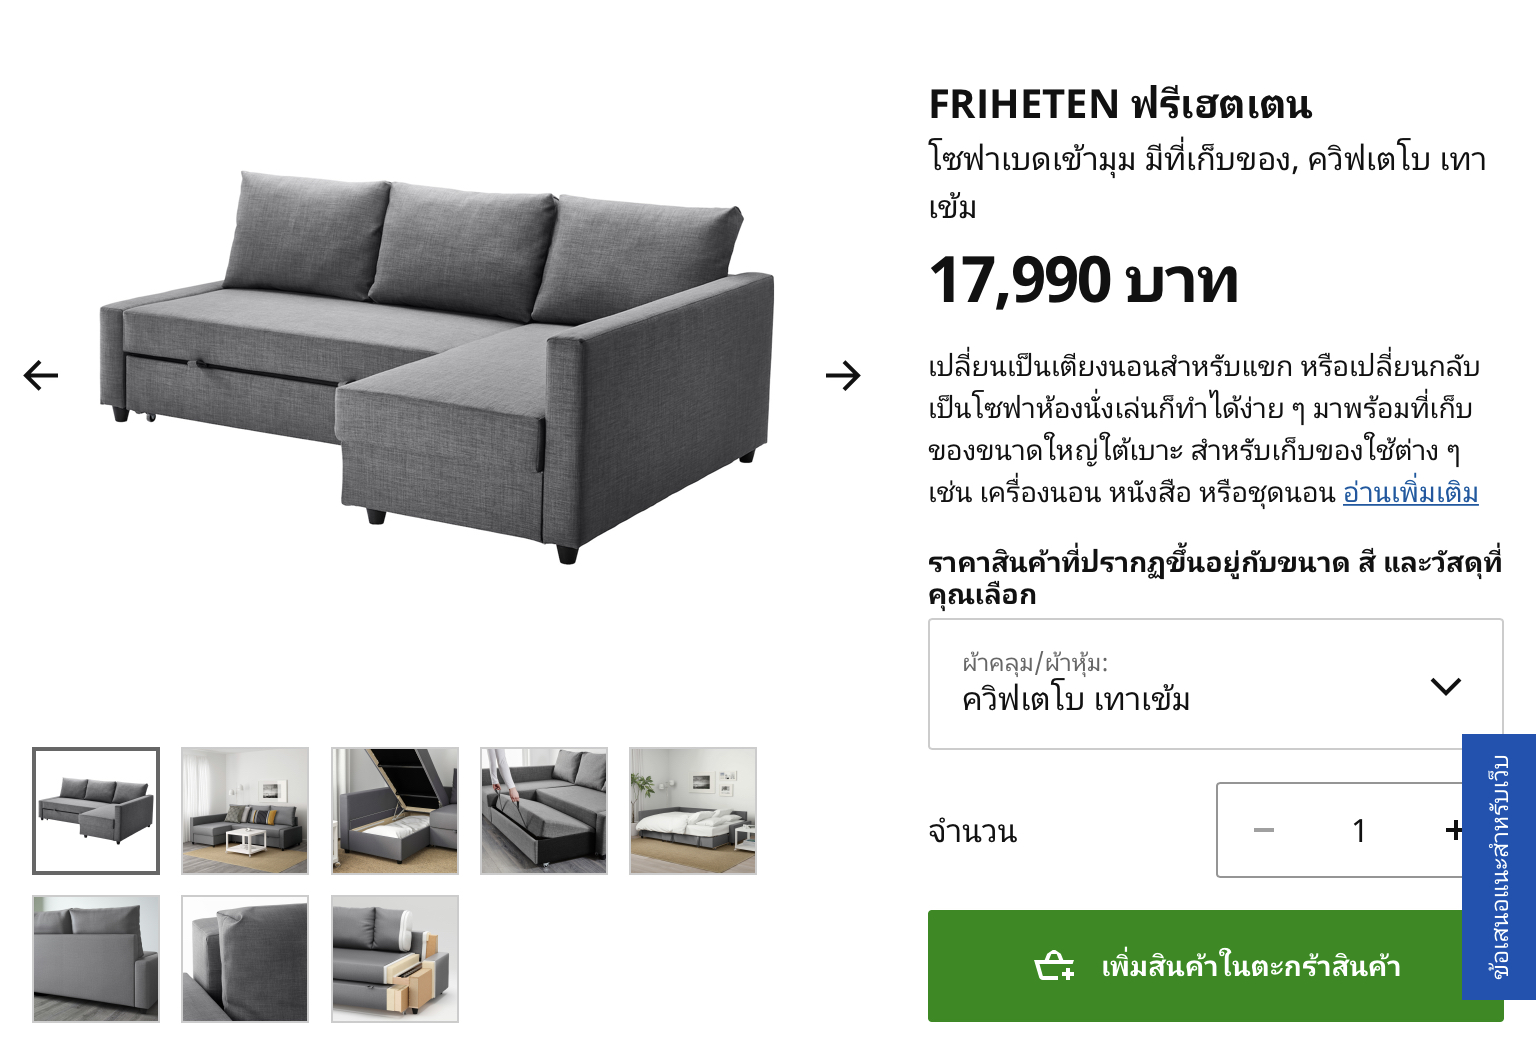 ใครใช้โซฟา Ikea รุ่น Friheten บ้างครับ คุณภาพเป็นอย่างไรบ้าง - Pantip